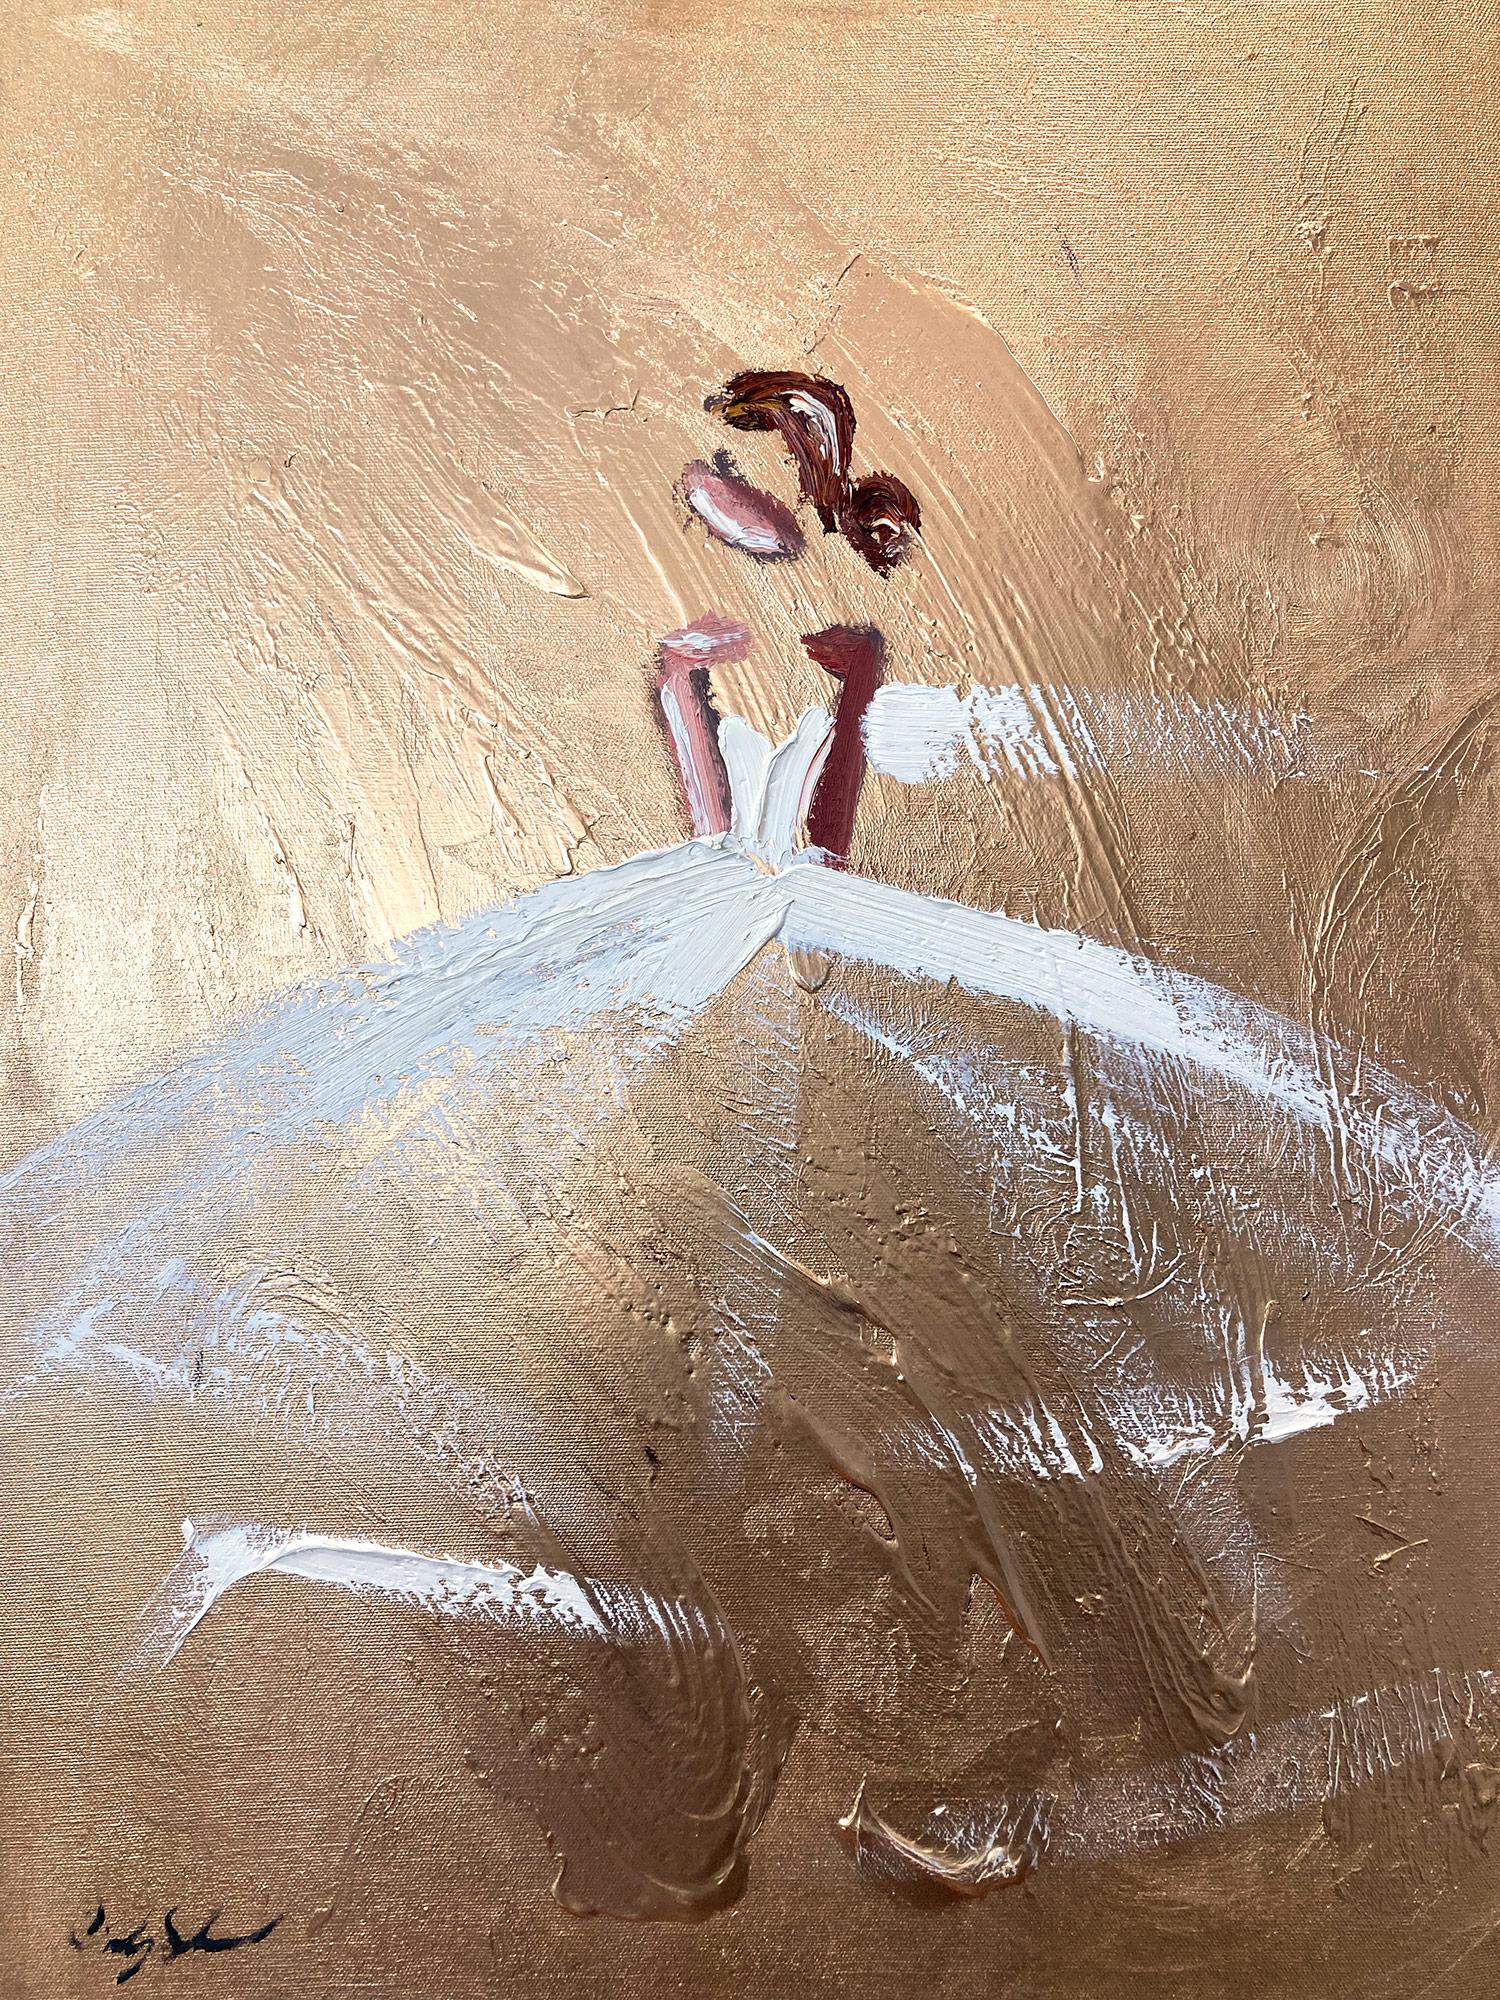 Abstract Painting Cindy Shaoul - "Paris on My Mind" - Figure abstraite dorée sur toile - Peinture à l'huile de haute couture